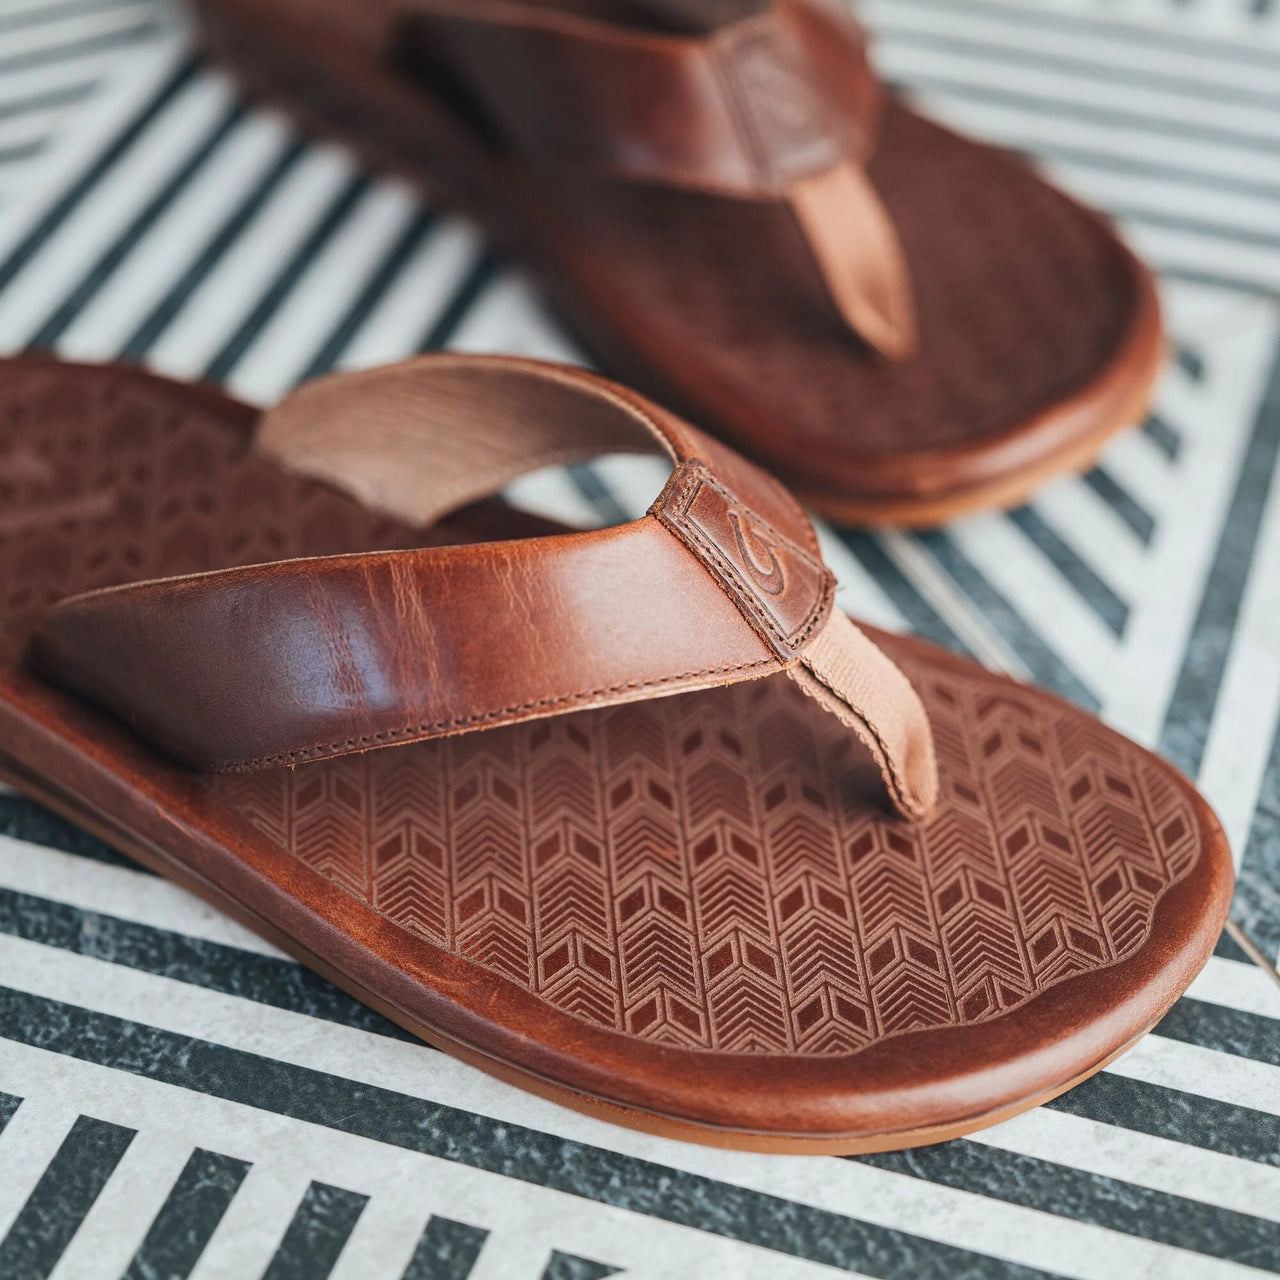 'Ilikai Men's Premium Leather Beach Sandal - Toffee